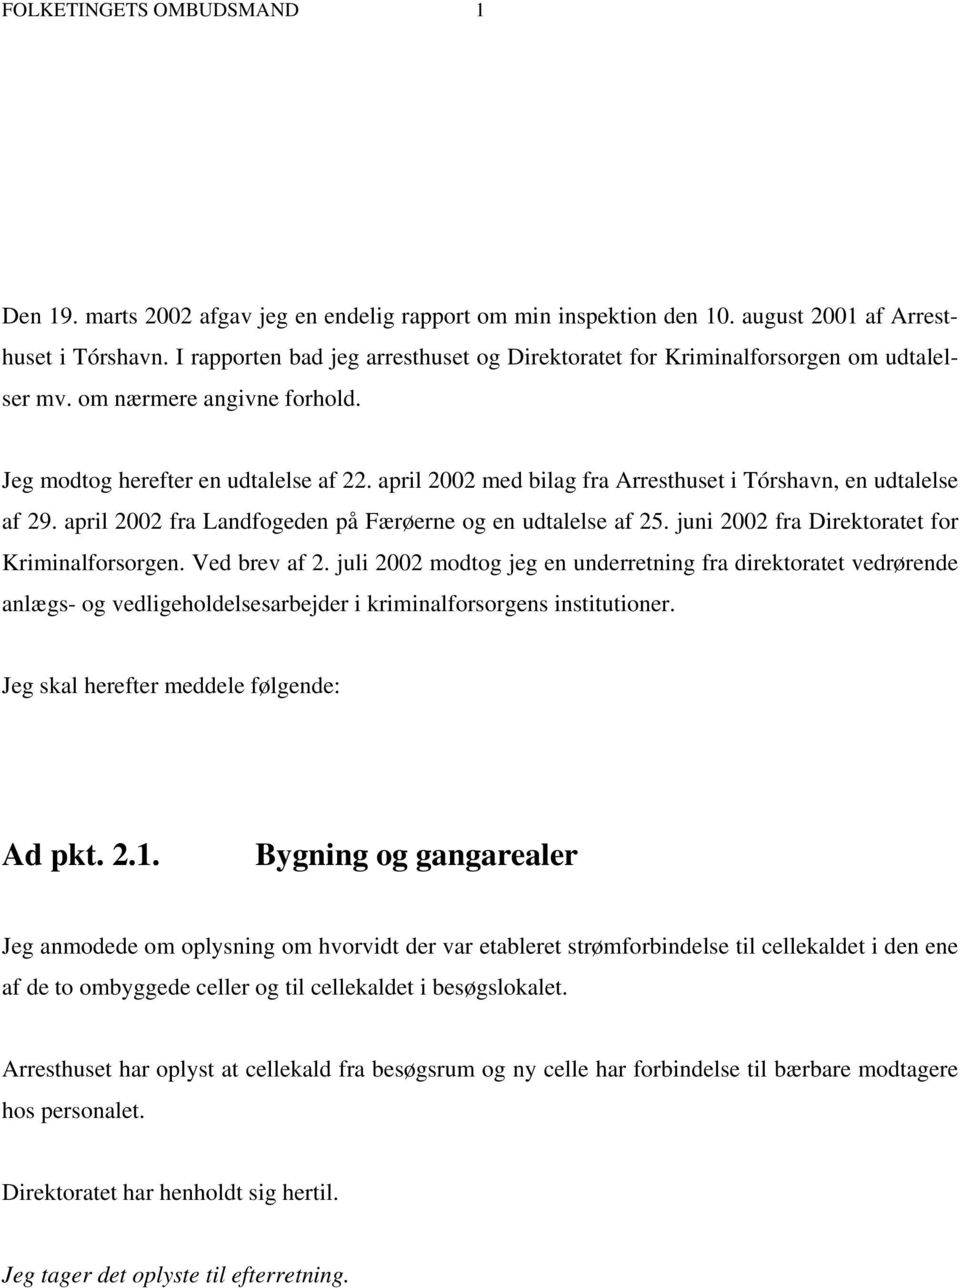 april 2002 med bilag fra Arresthuset i Tórshavn, en udtalelse af 29. april 2002 fra Landfogeden på Færøerne og en udtalelse af 25. juni 2002 fra Direktoratet for Kriminalforsorgen. Ved brev af 2.